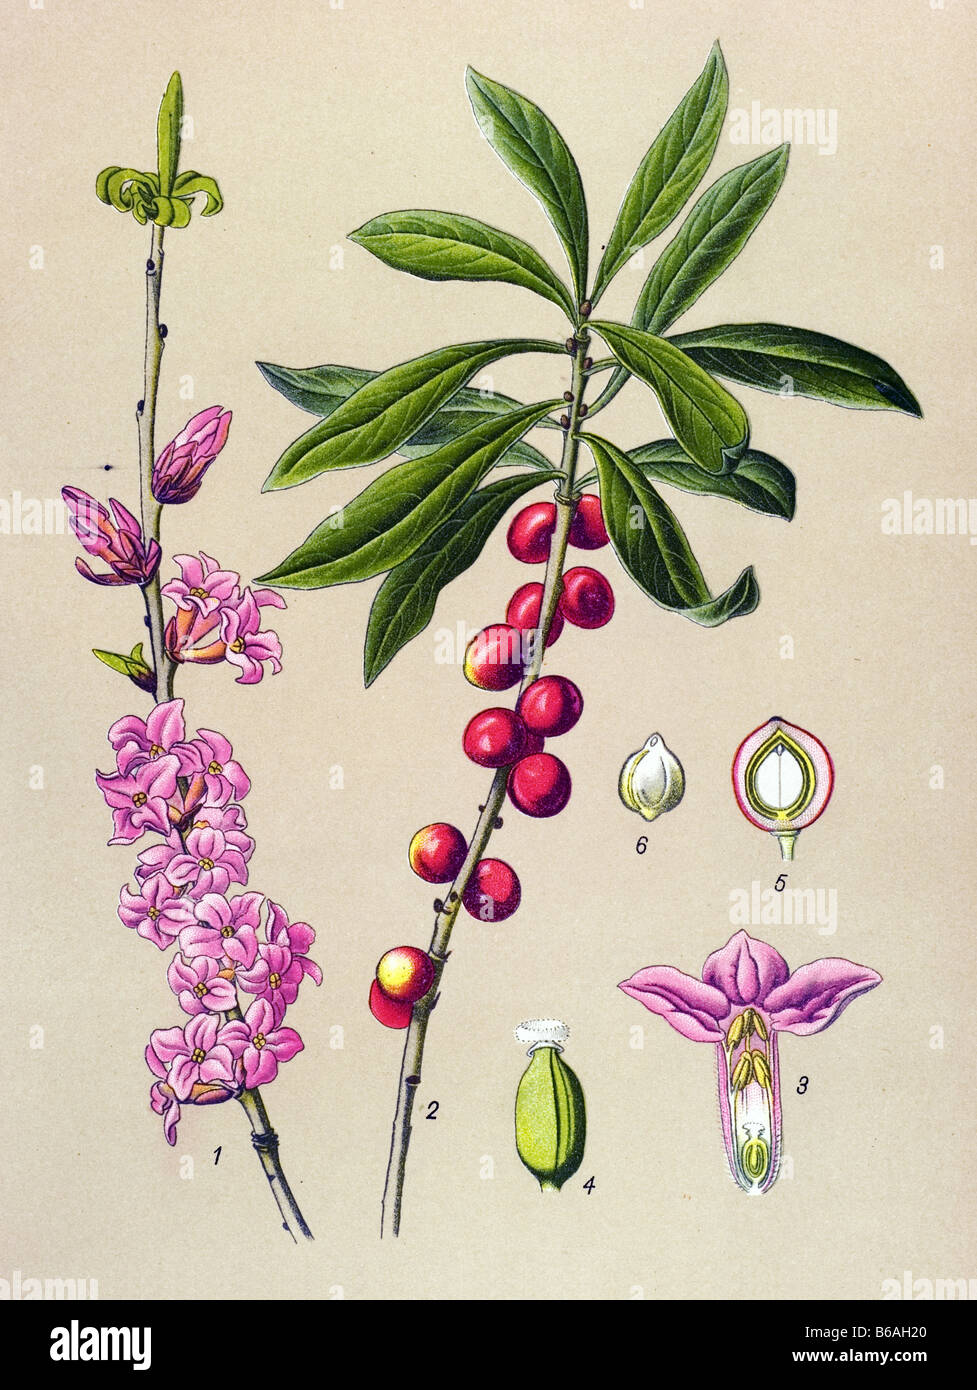 Daphne , Daphne Mezereum, poisonous plants illustrations Stock Photo